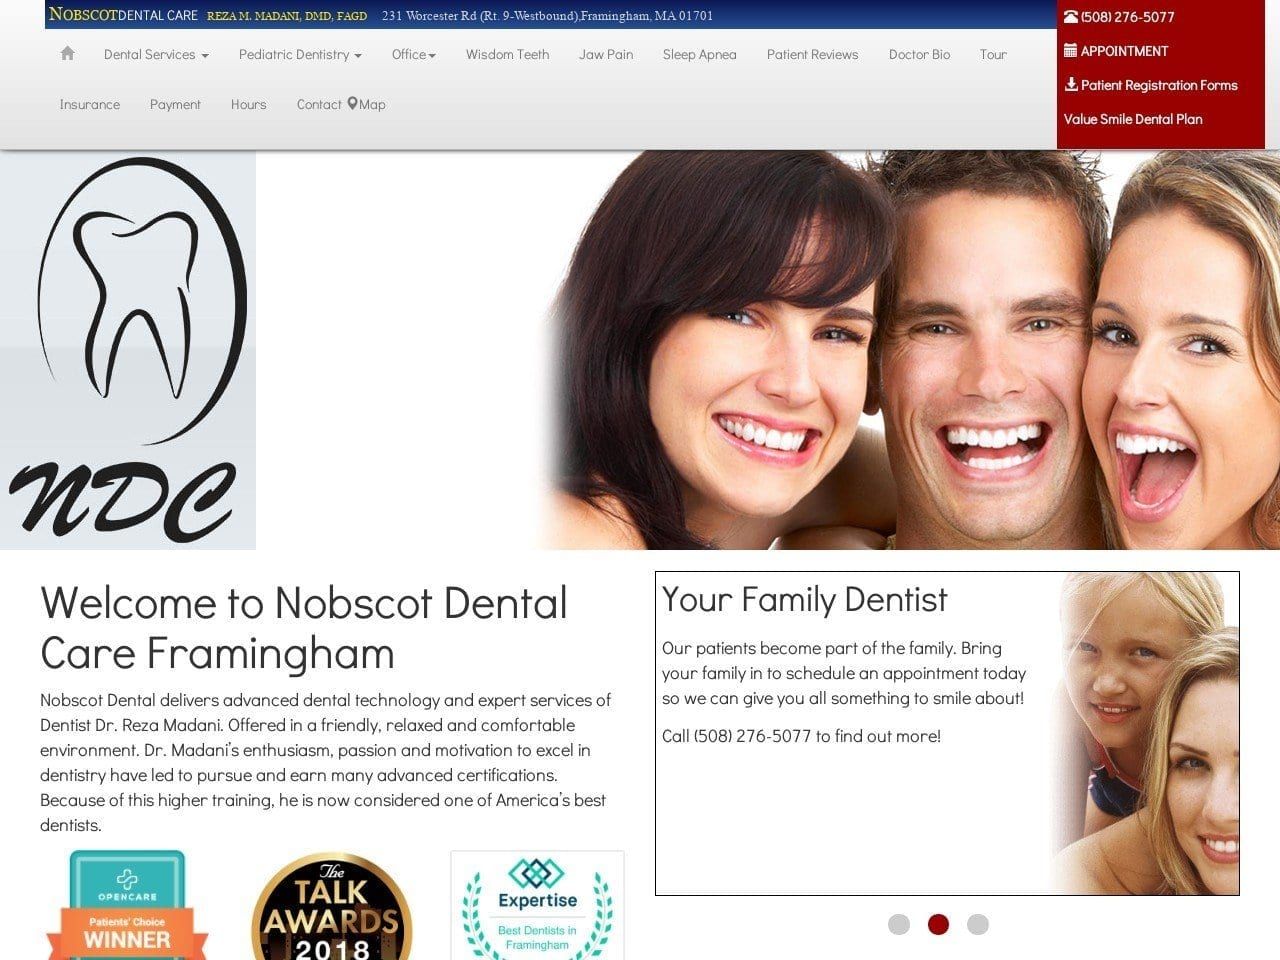 Nobscot Dental Care Website Screenshot from nobscotdentalcare.com